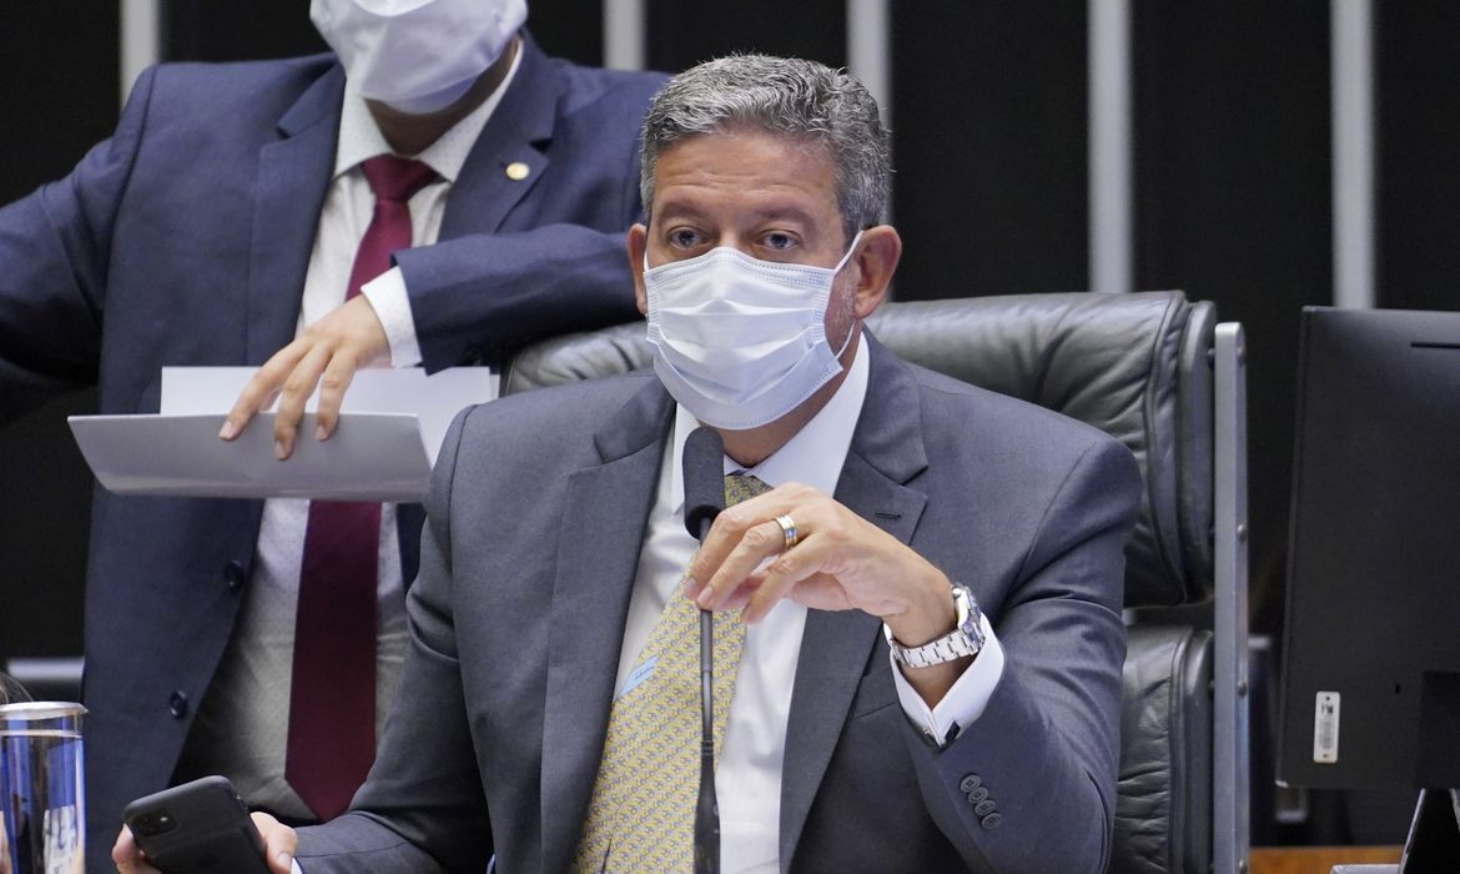 Se Bolsonaro fala sem base científica, deve pagar por declaração, diz Lira | Jornal da Orla